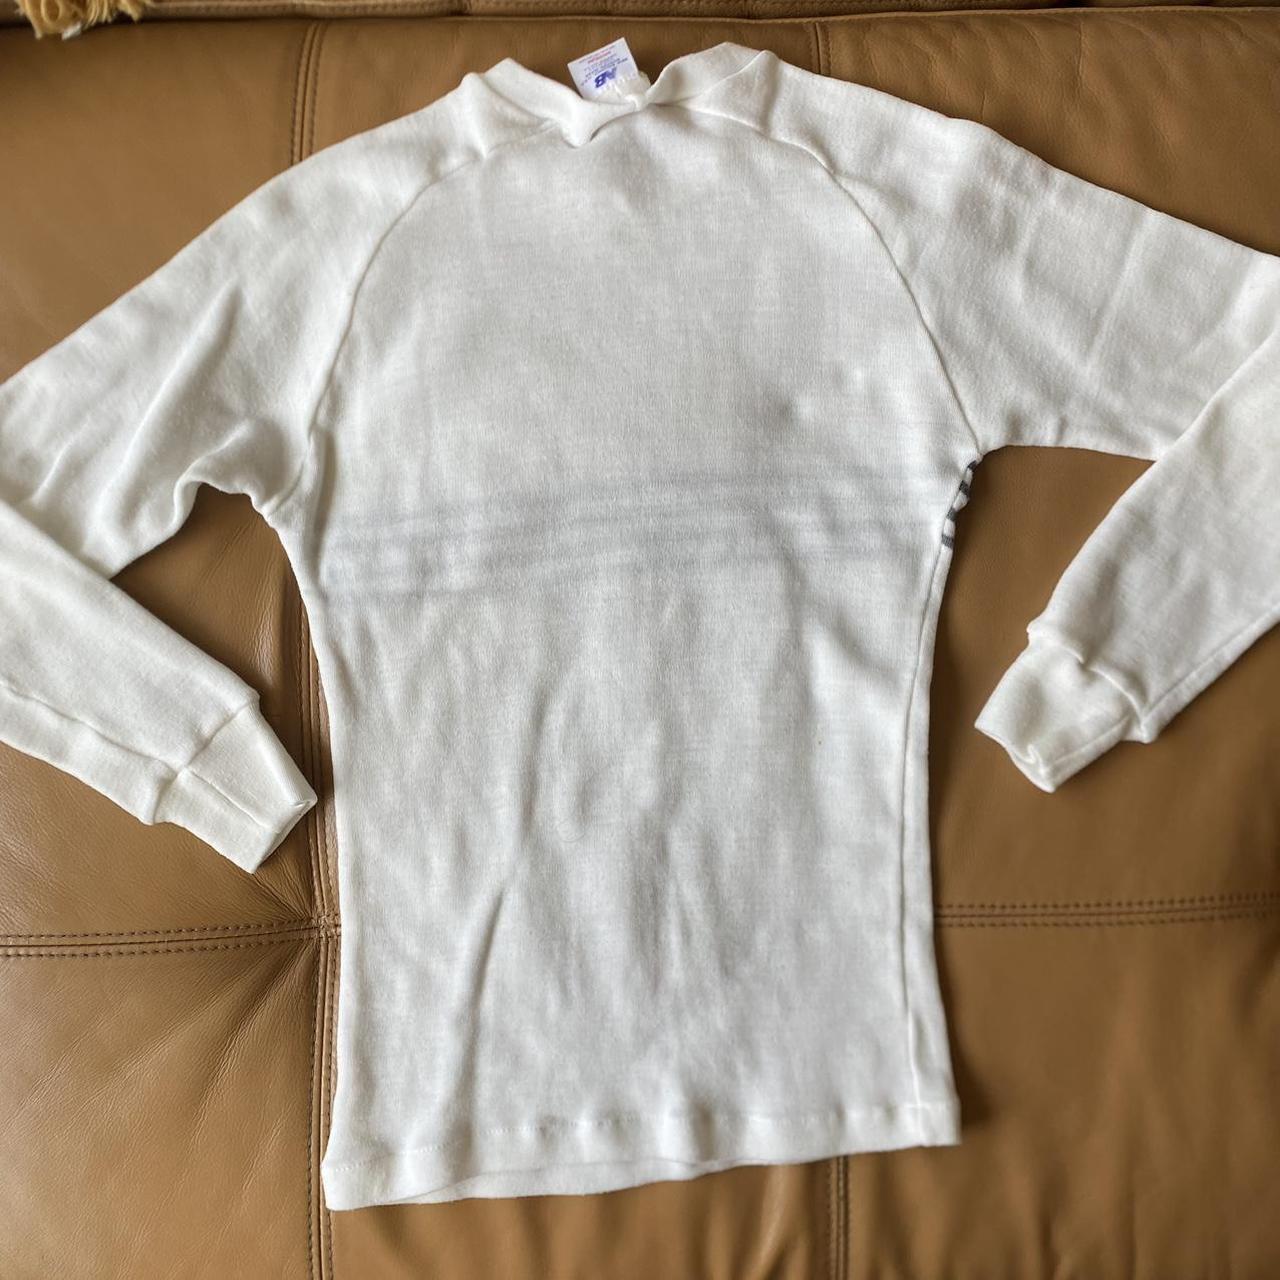 New Balance Women's White and Black Shirt (3)